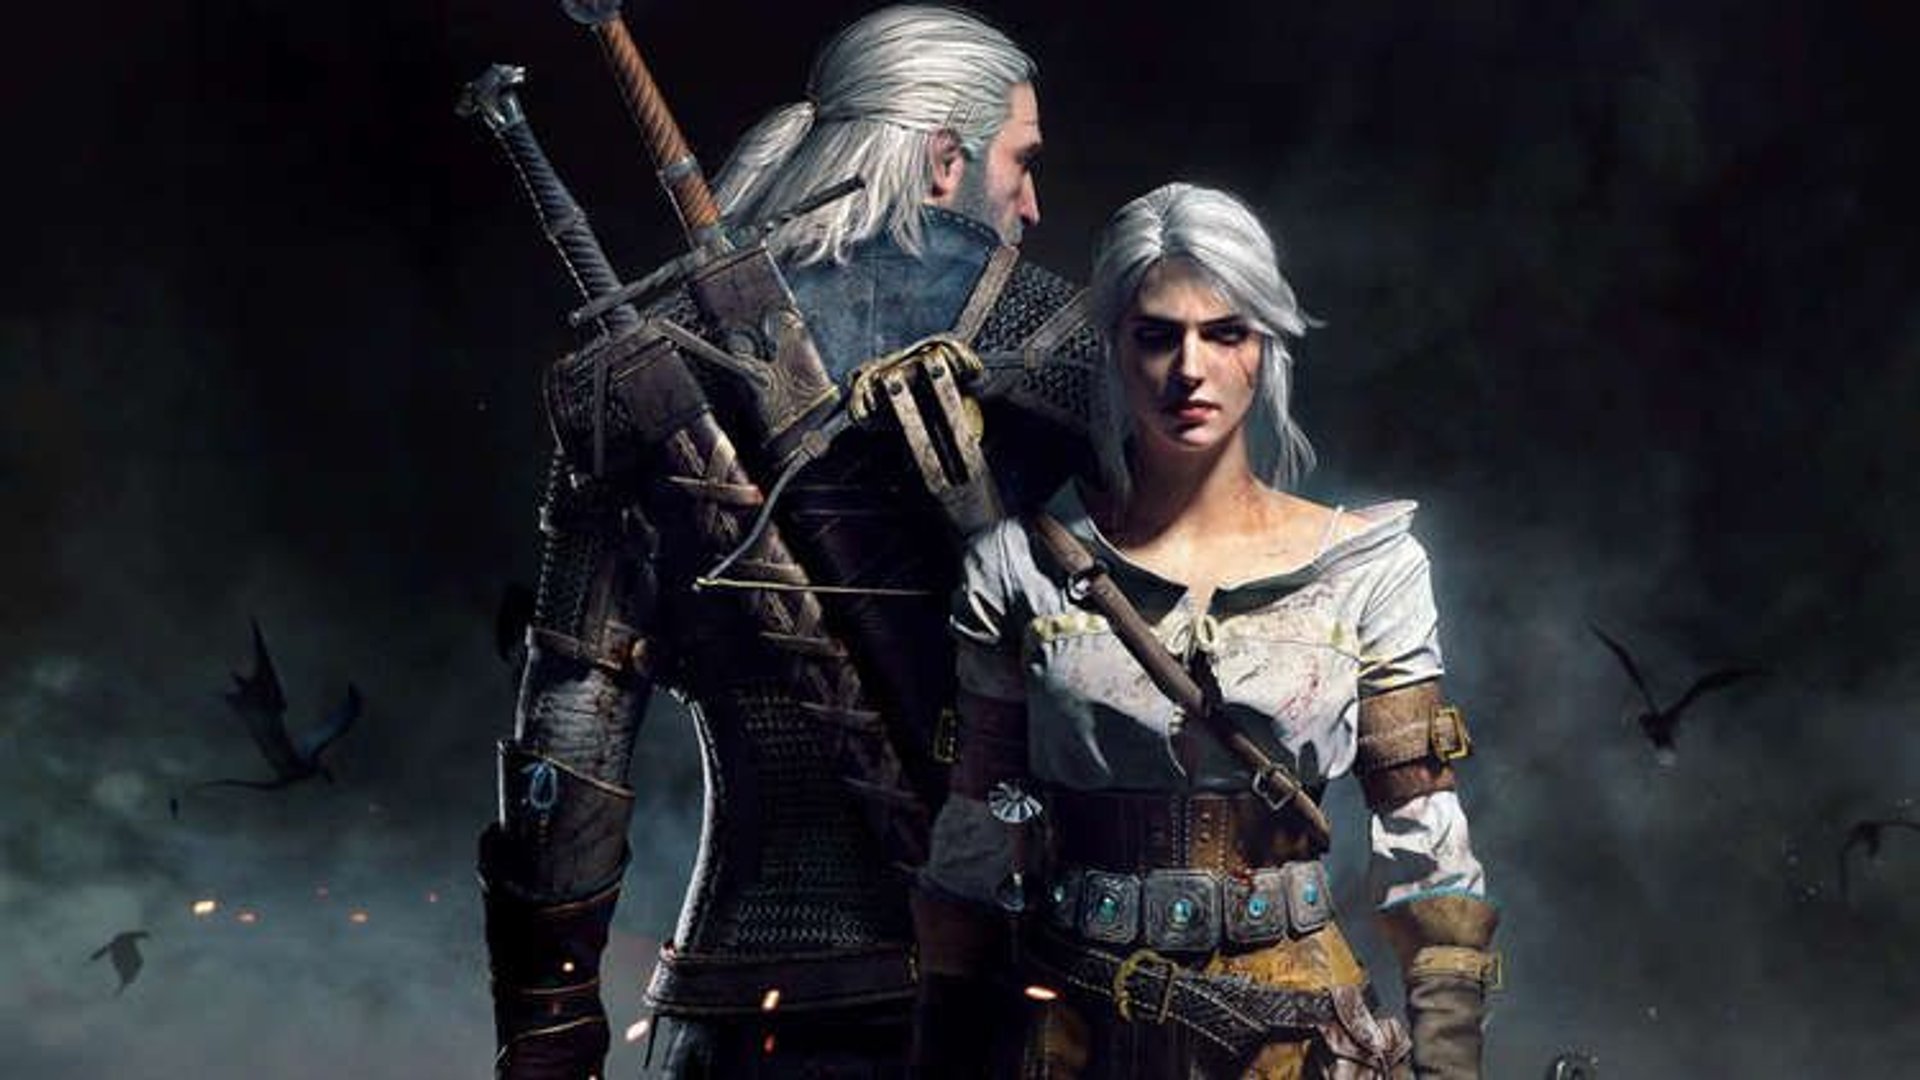 Ciri i Geralt